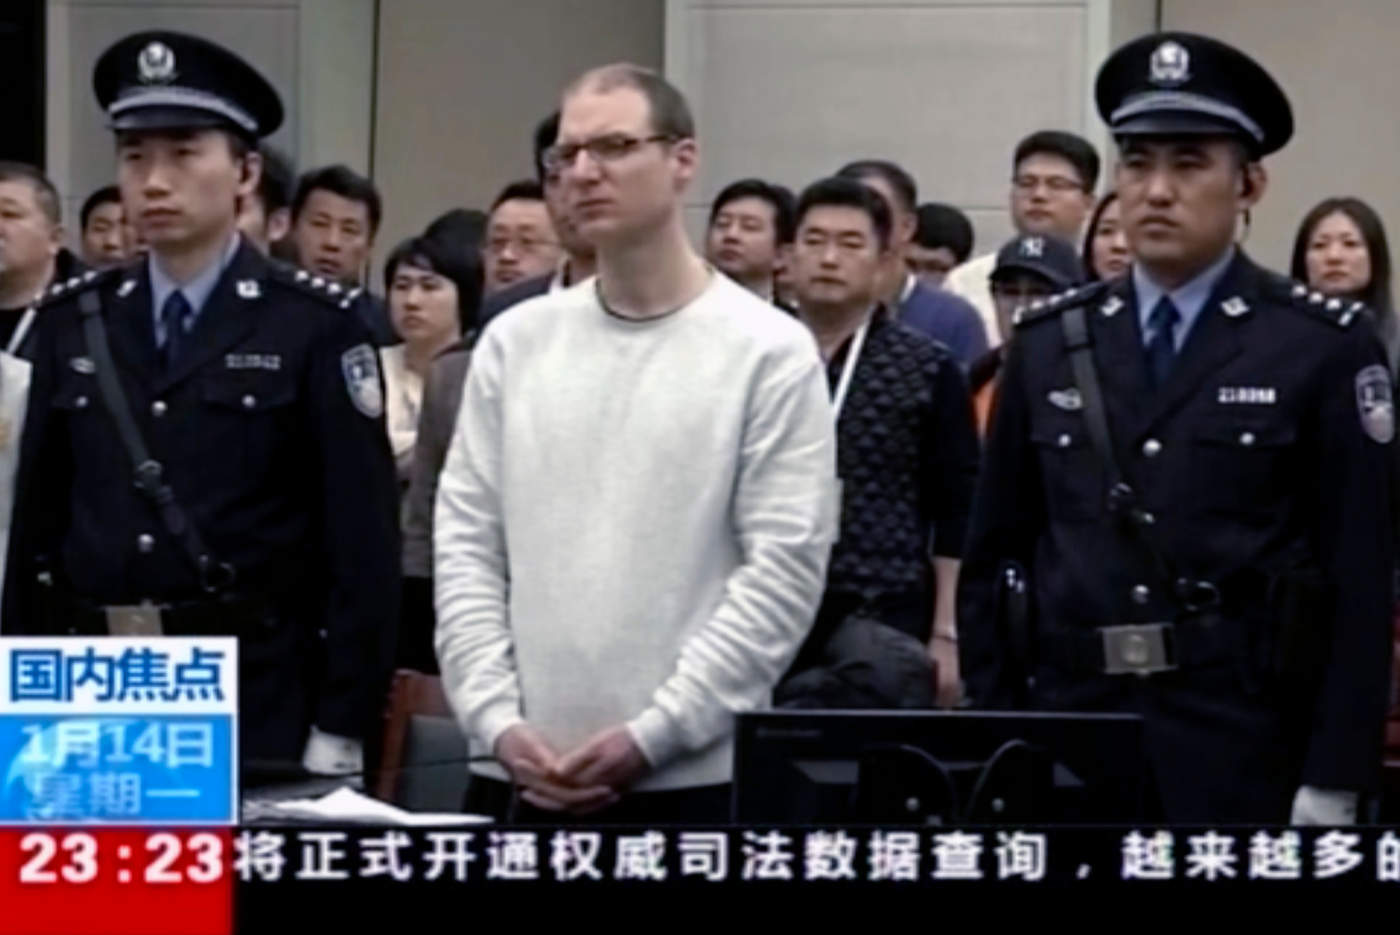 El tribunal en la provincia nororiental de Liaoning condenó a Robert Lloyd Schellenberg a muerte tras rechazar su declaración de inocencia y declararlo culpable de complicidad en contrabando de drogas. (AP)